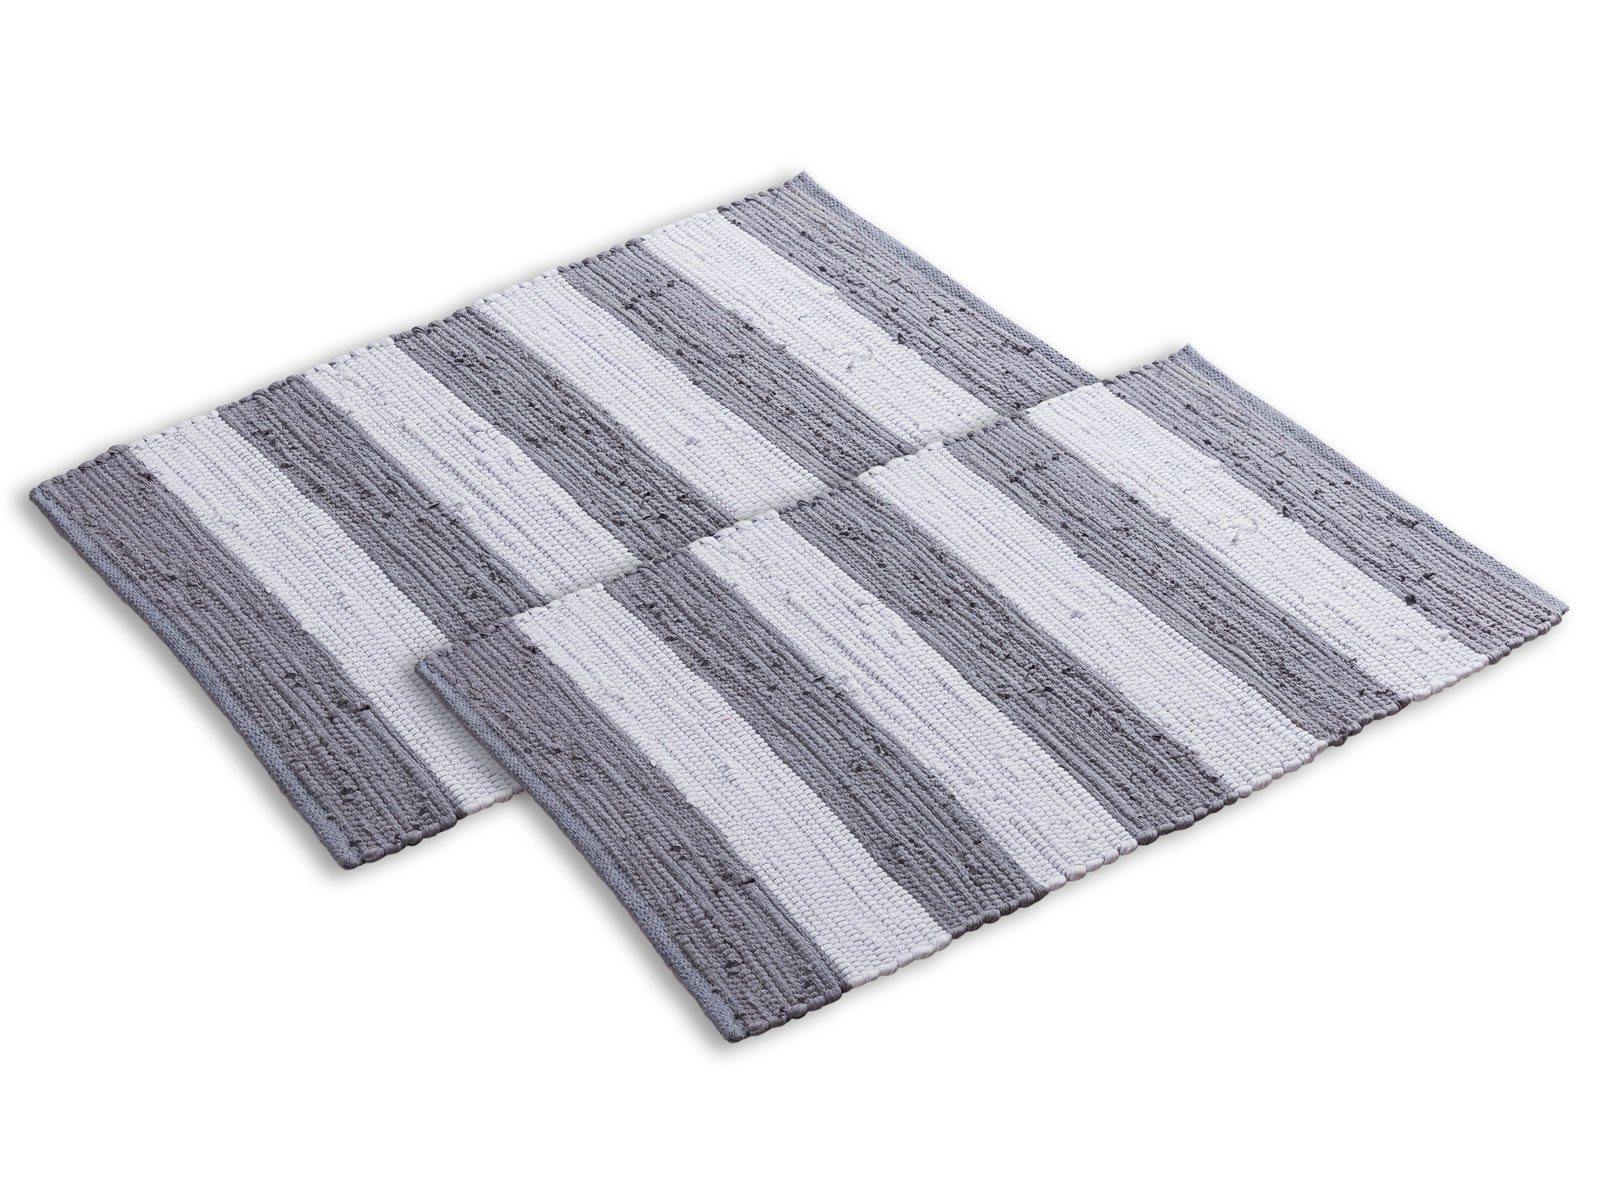 Teppich Badematte Set 2er groß 80 x 50 cm 100% Baumwolle Badteppich Badvorleger Badezimmerteppich Chindi, Casamia, Höhe: 1.5 mm grau - weiß